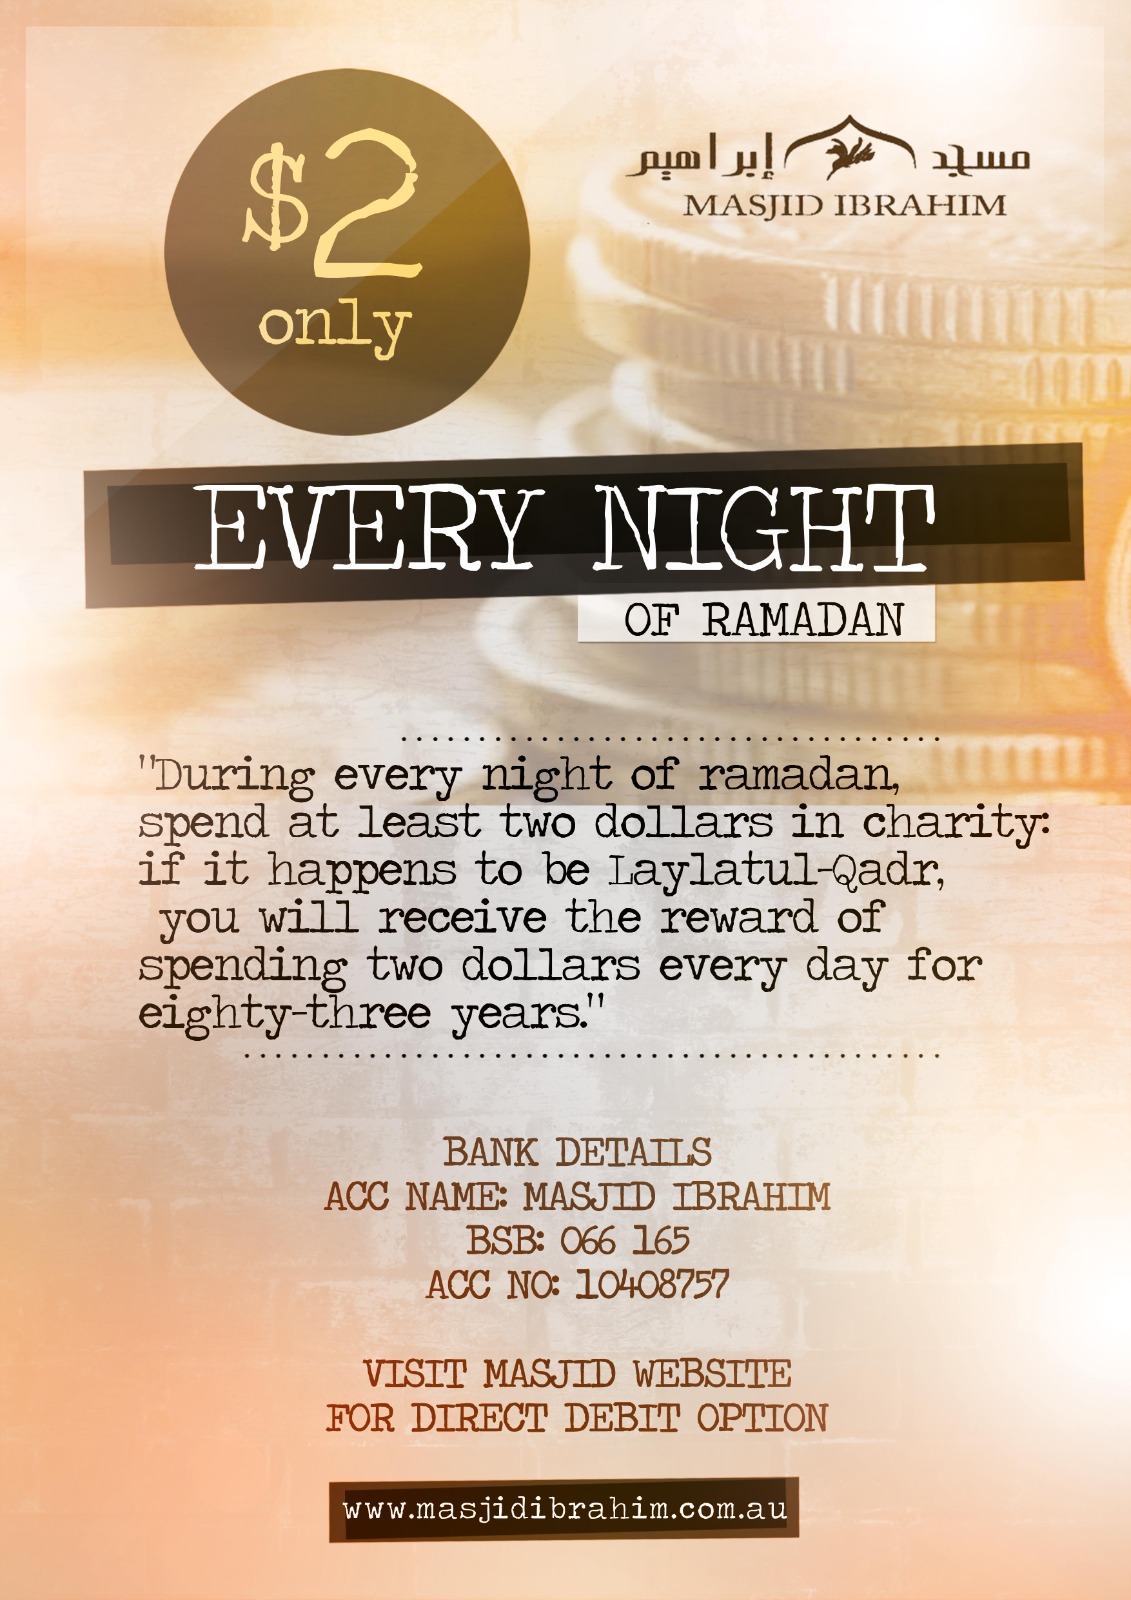 $2 Every Night in Ramadan